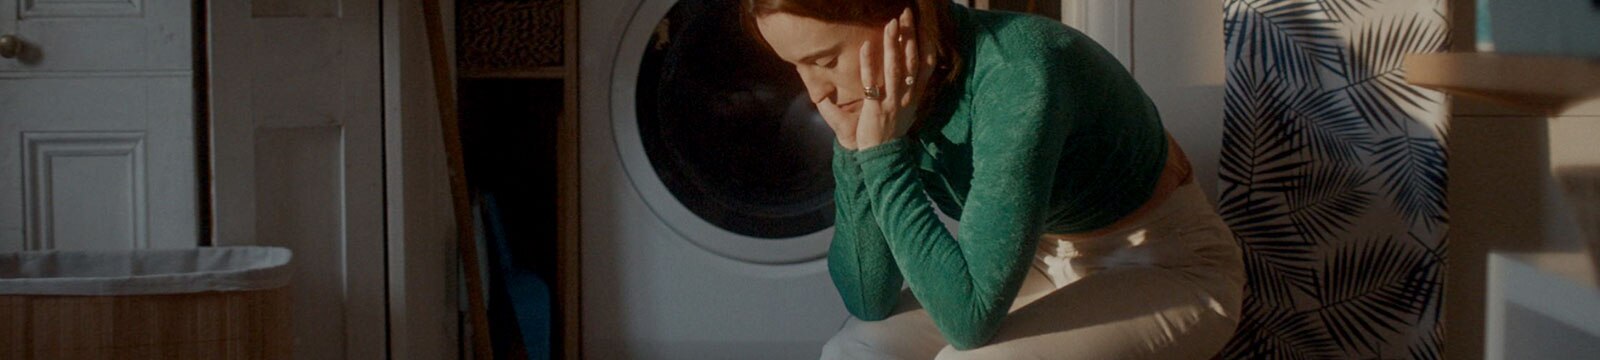 Una donna stanca è seduta da sola in una lavanderia 